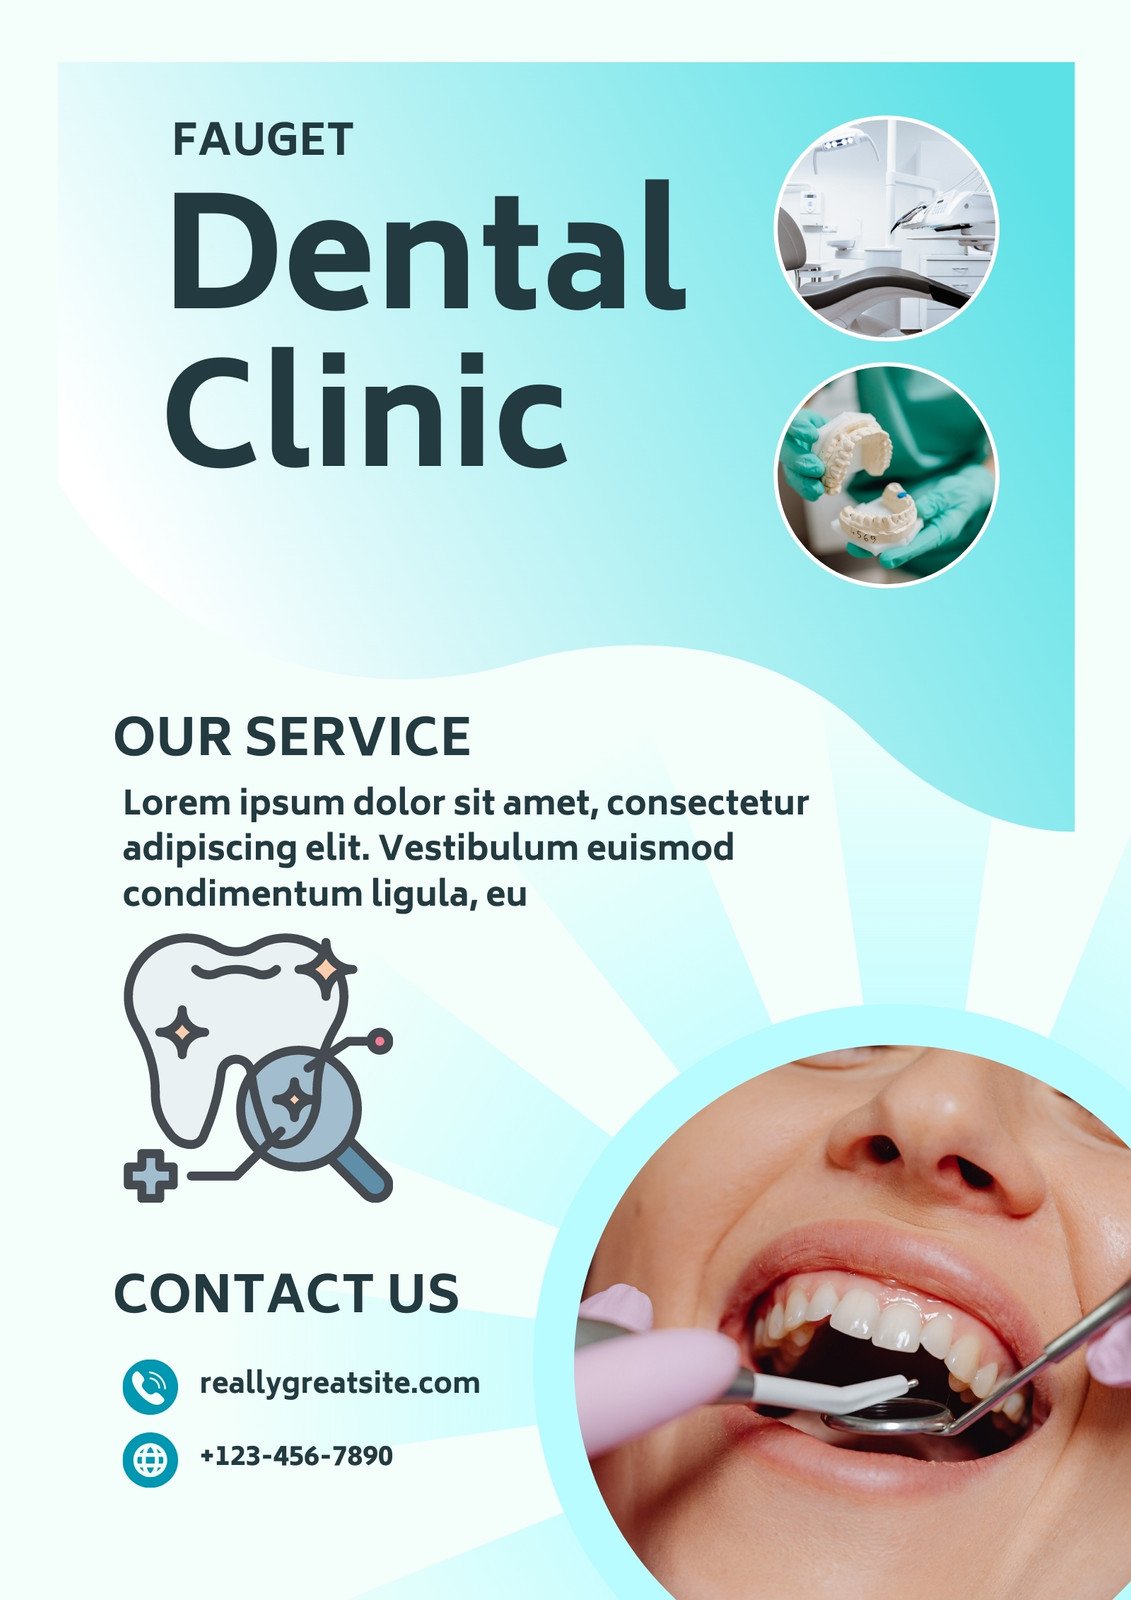 Free dental care samples online